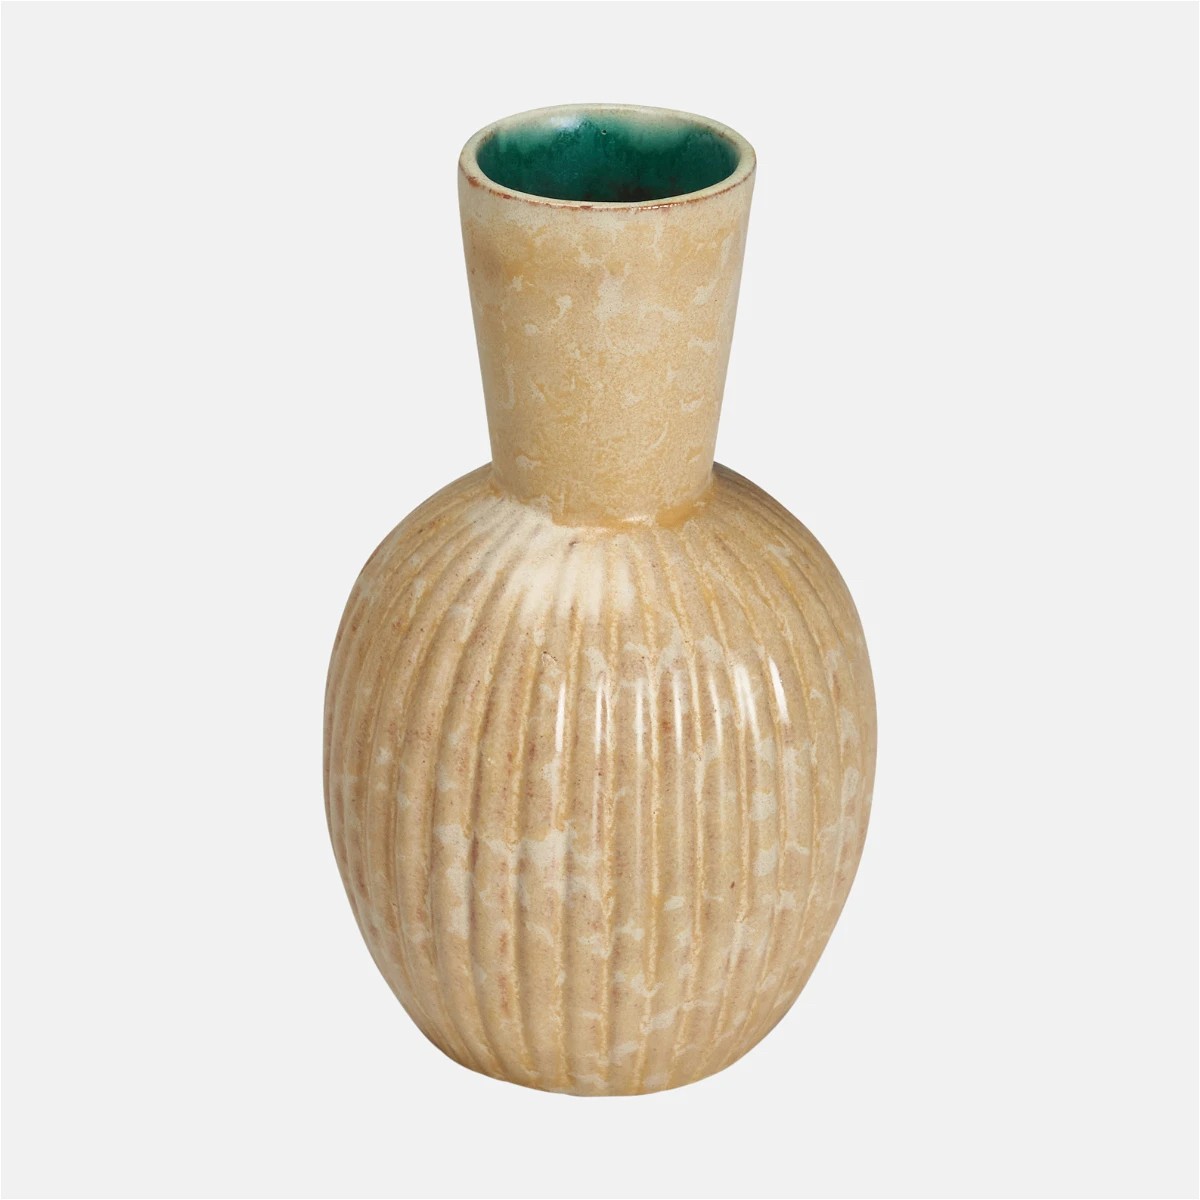 The image of an Upsala-Ekeby Glazed Stoneware Vase product